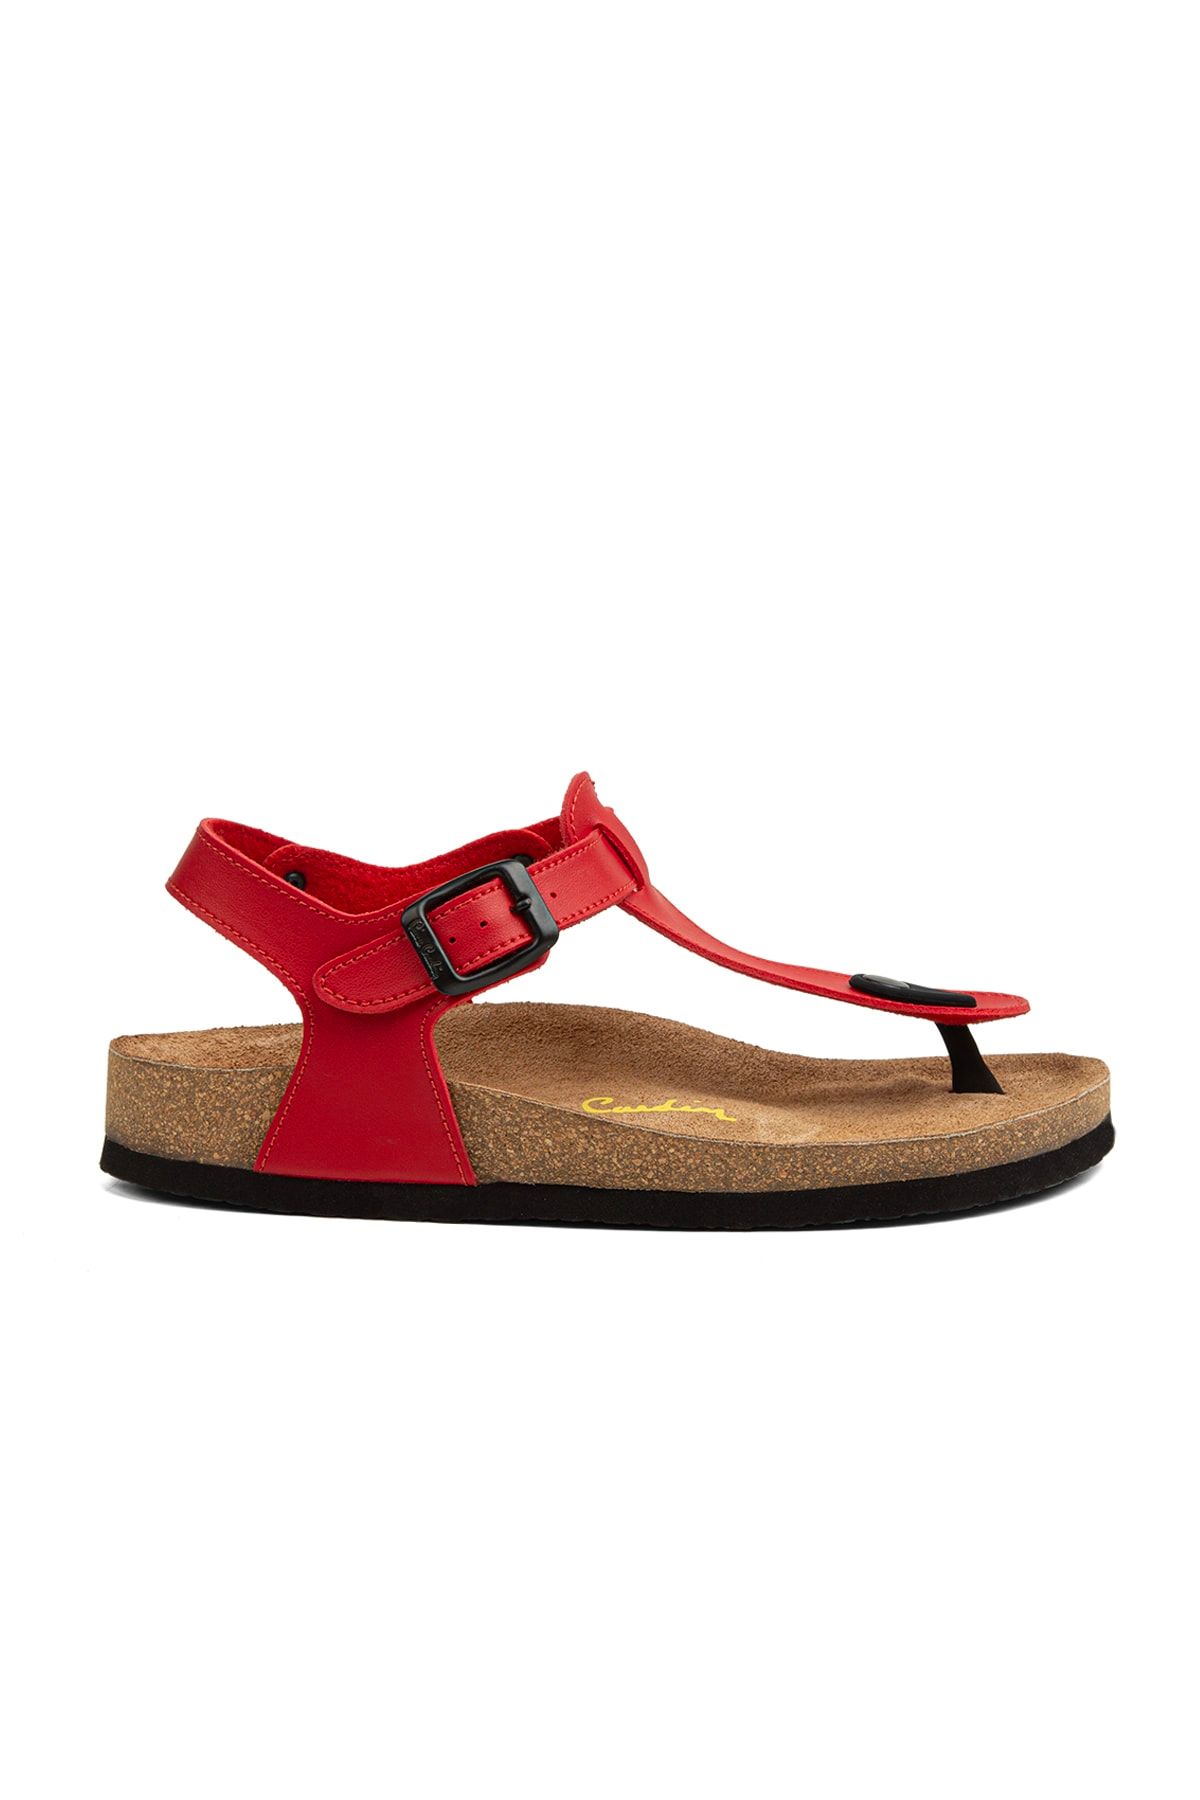 Pierre Cardin ® | Pc-5056 Kırmızı - Kadın Sandalet